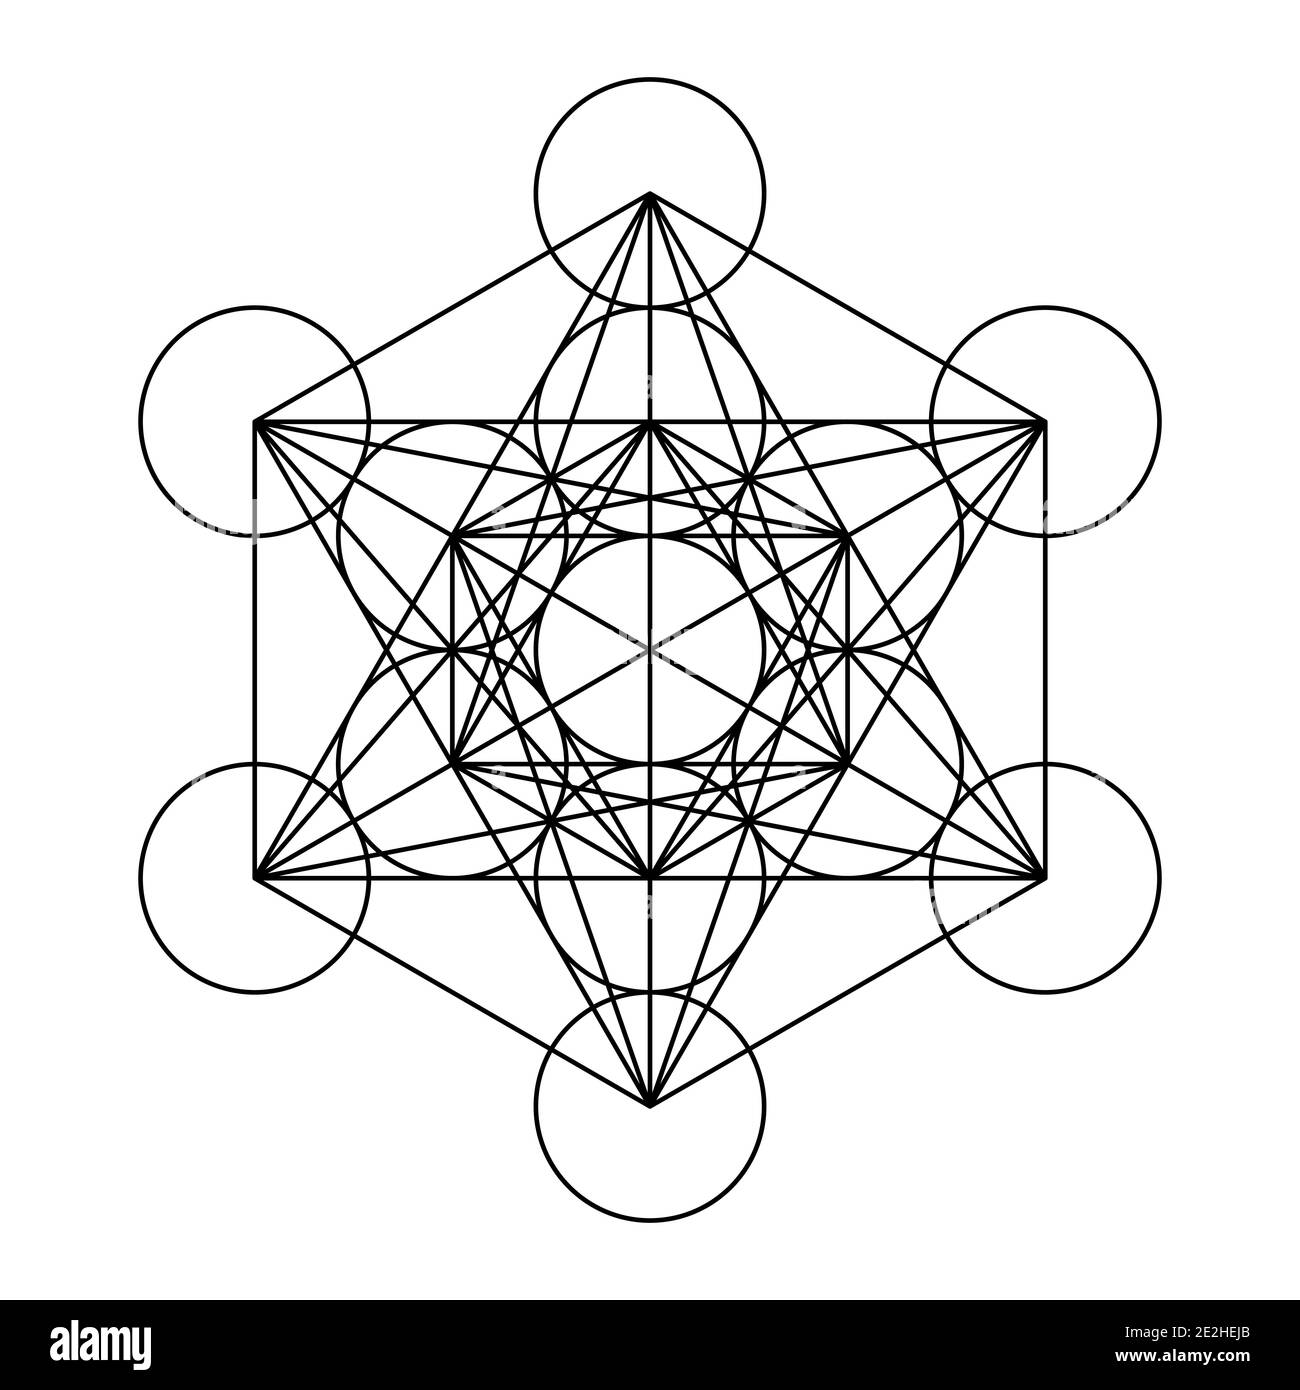 Metatrons Würfel, ein mystisches Symbol, abgeleitet von der Blume des  Lebens. Alle dreizehn Kreise sind mit geraden Linien verbunden. Heilige  Geometrie Stockfotografie - Alamy